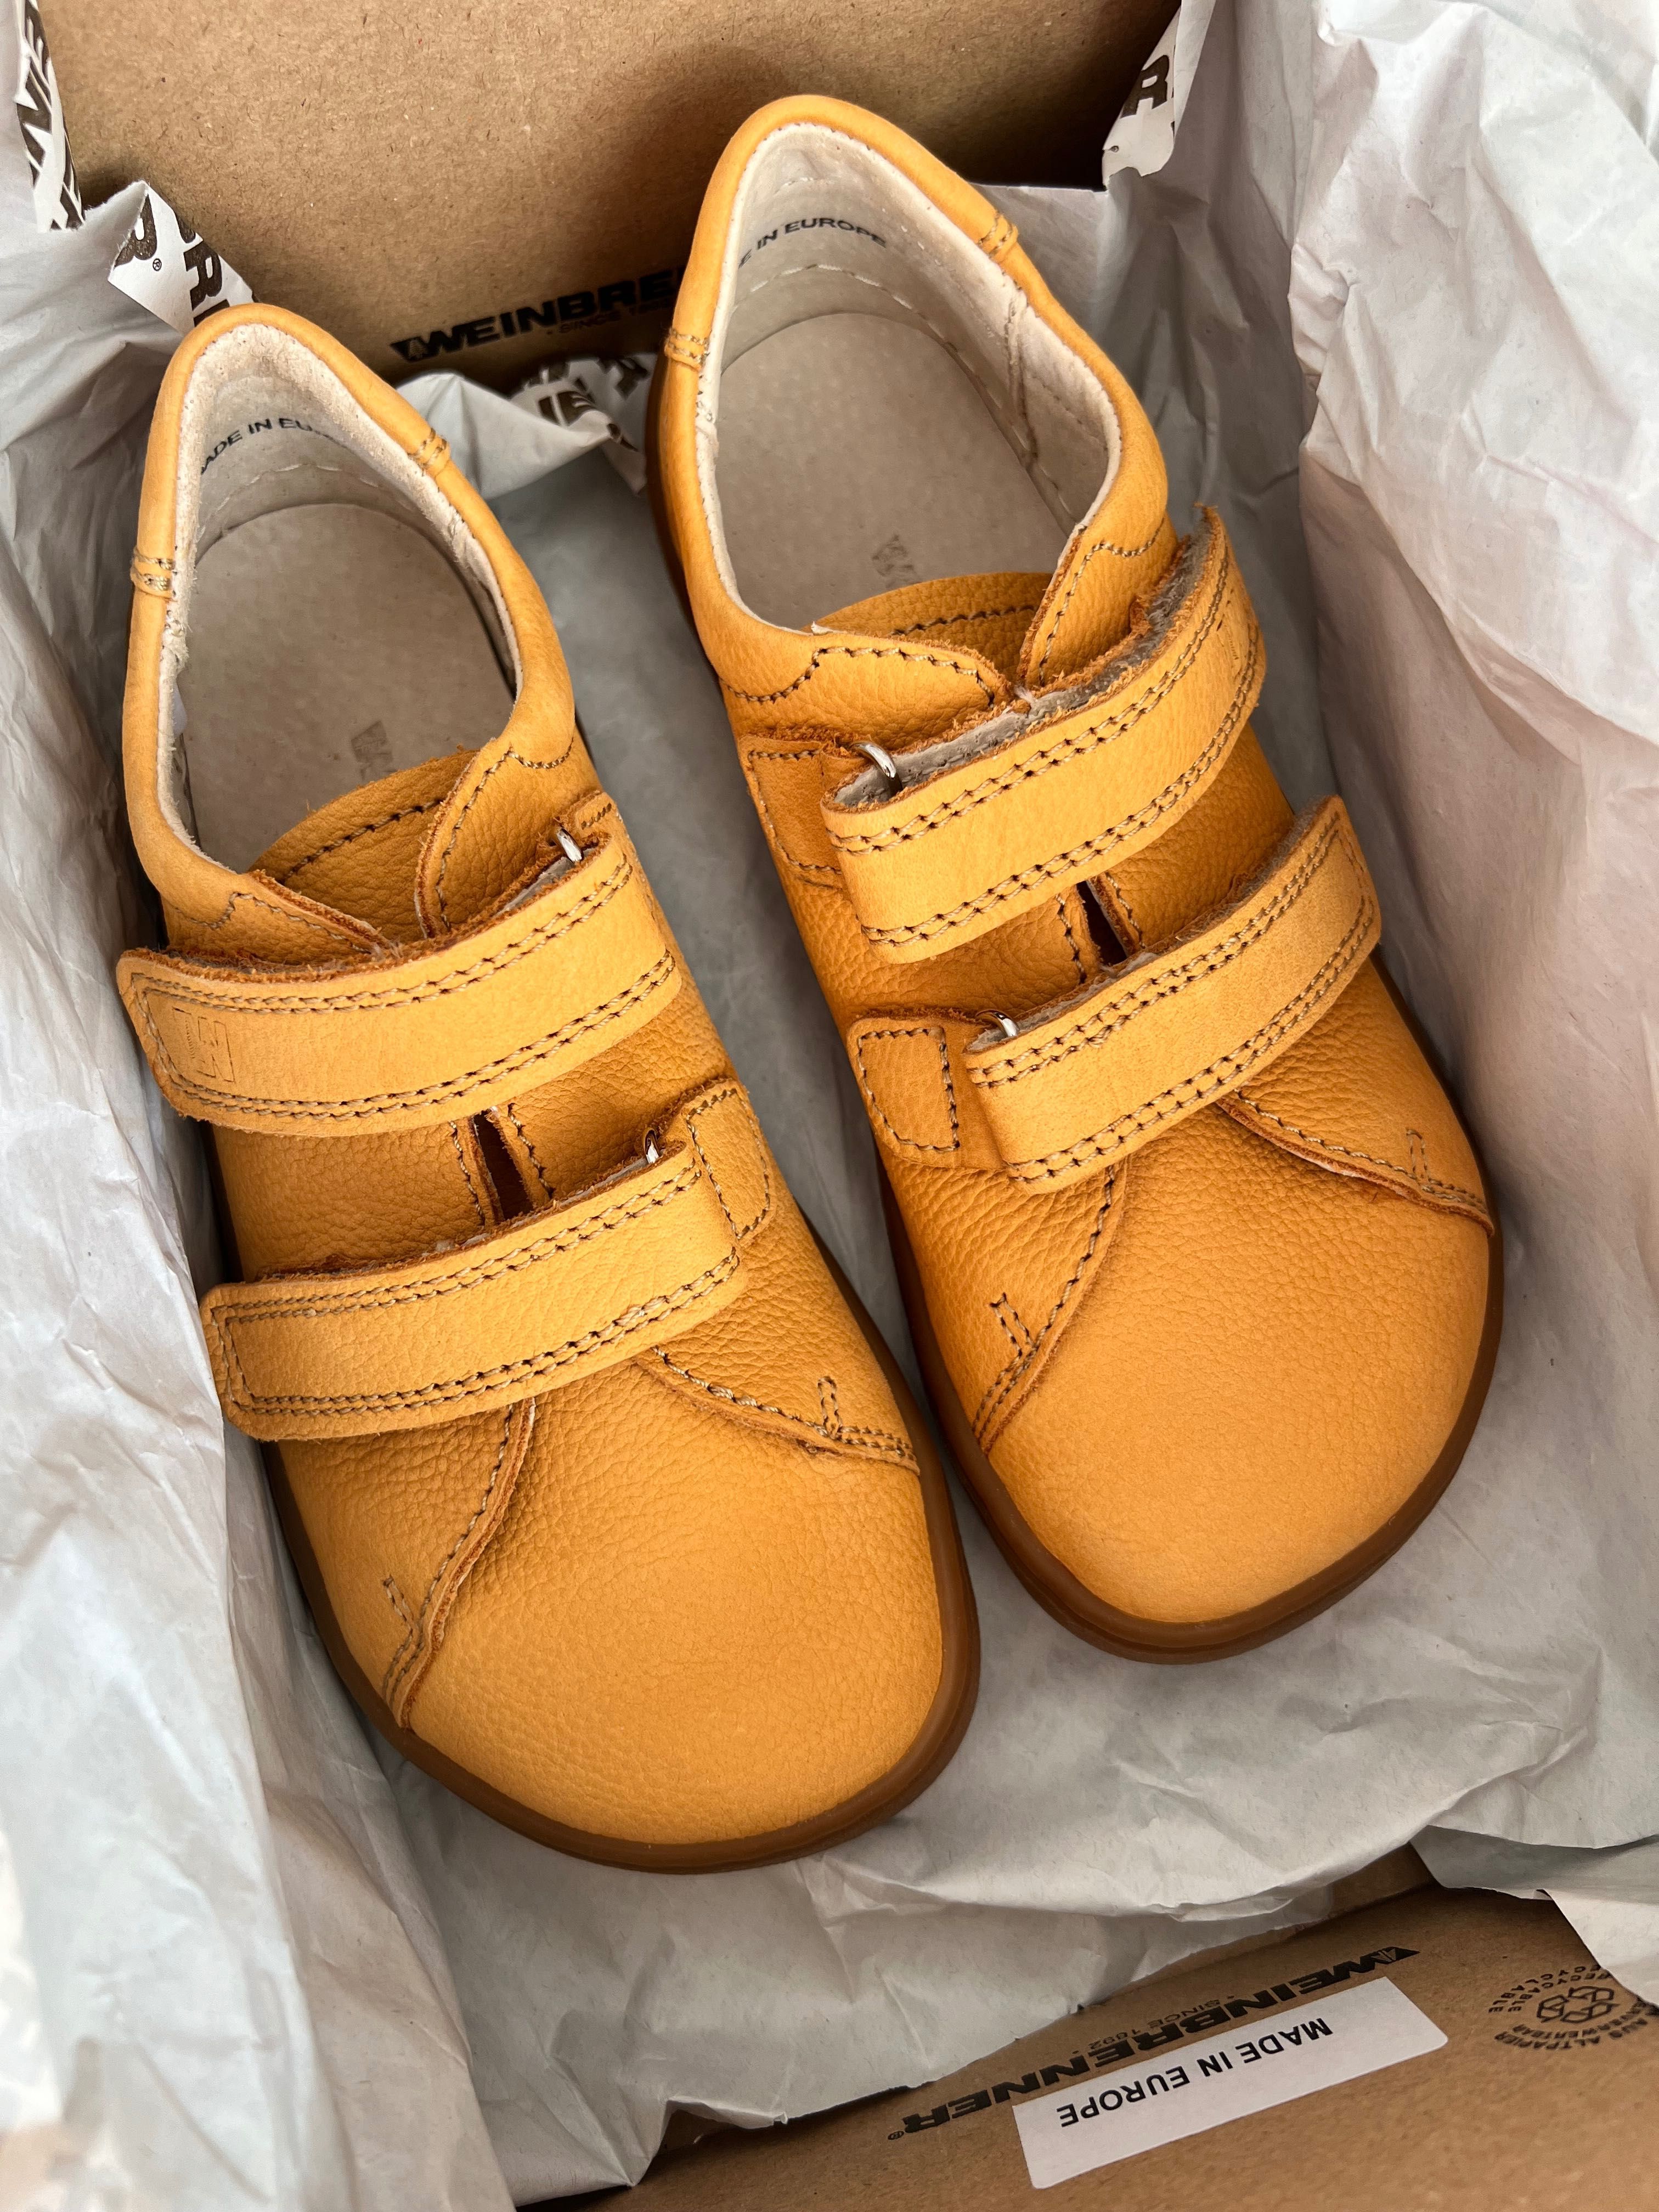 Barefoot дитяче взуття, з Європи